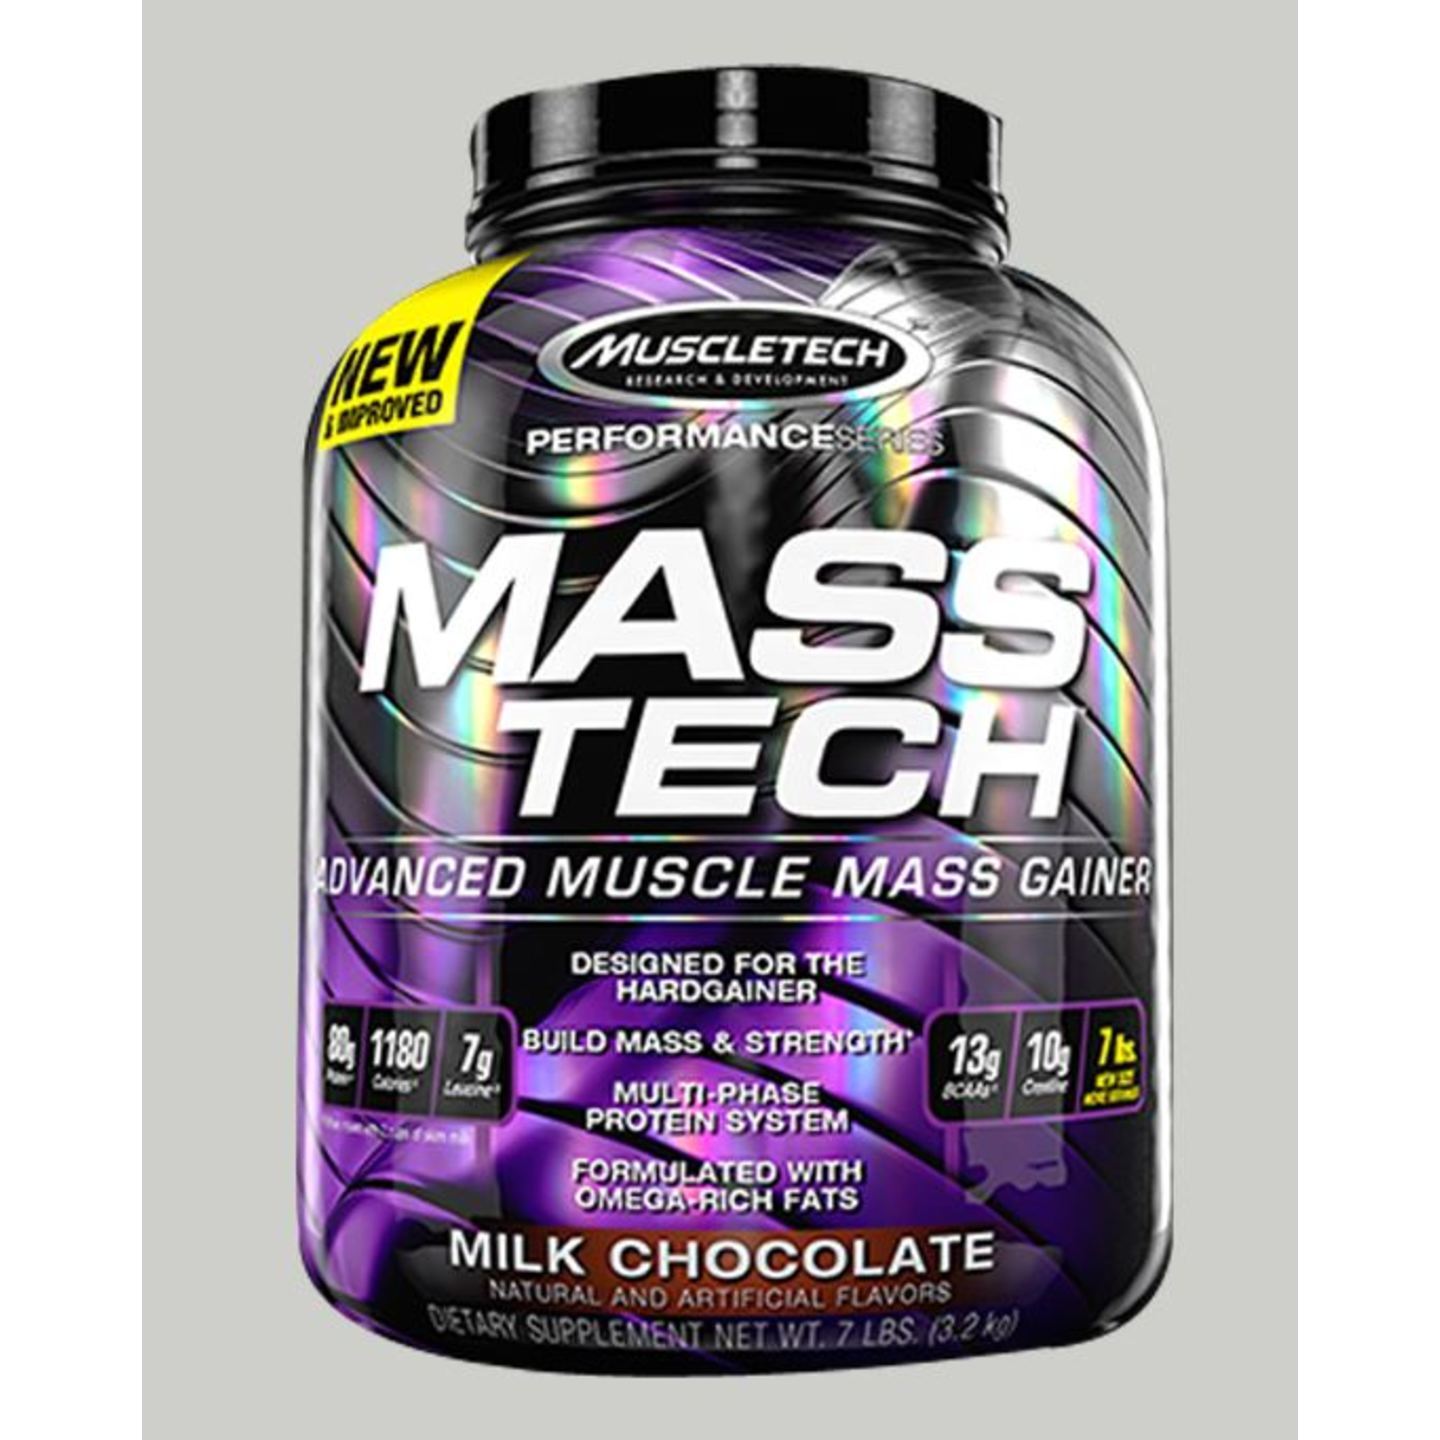 Muscletech Masstech Performance Series - Chocolate 7 Lbs